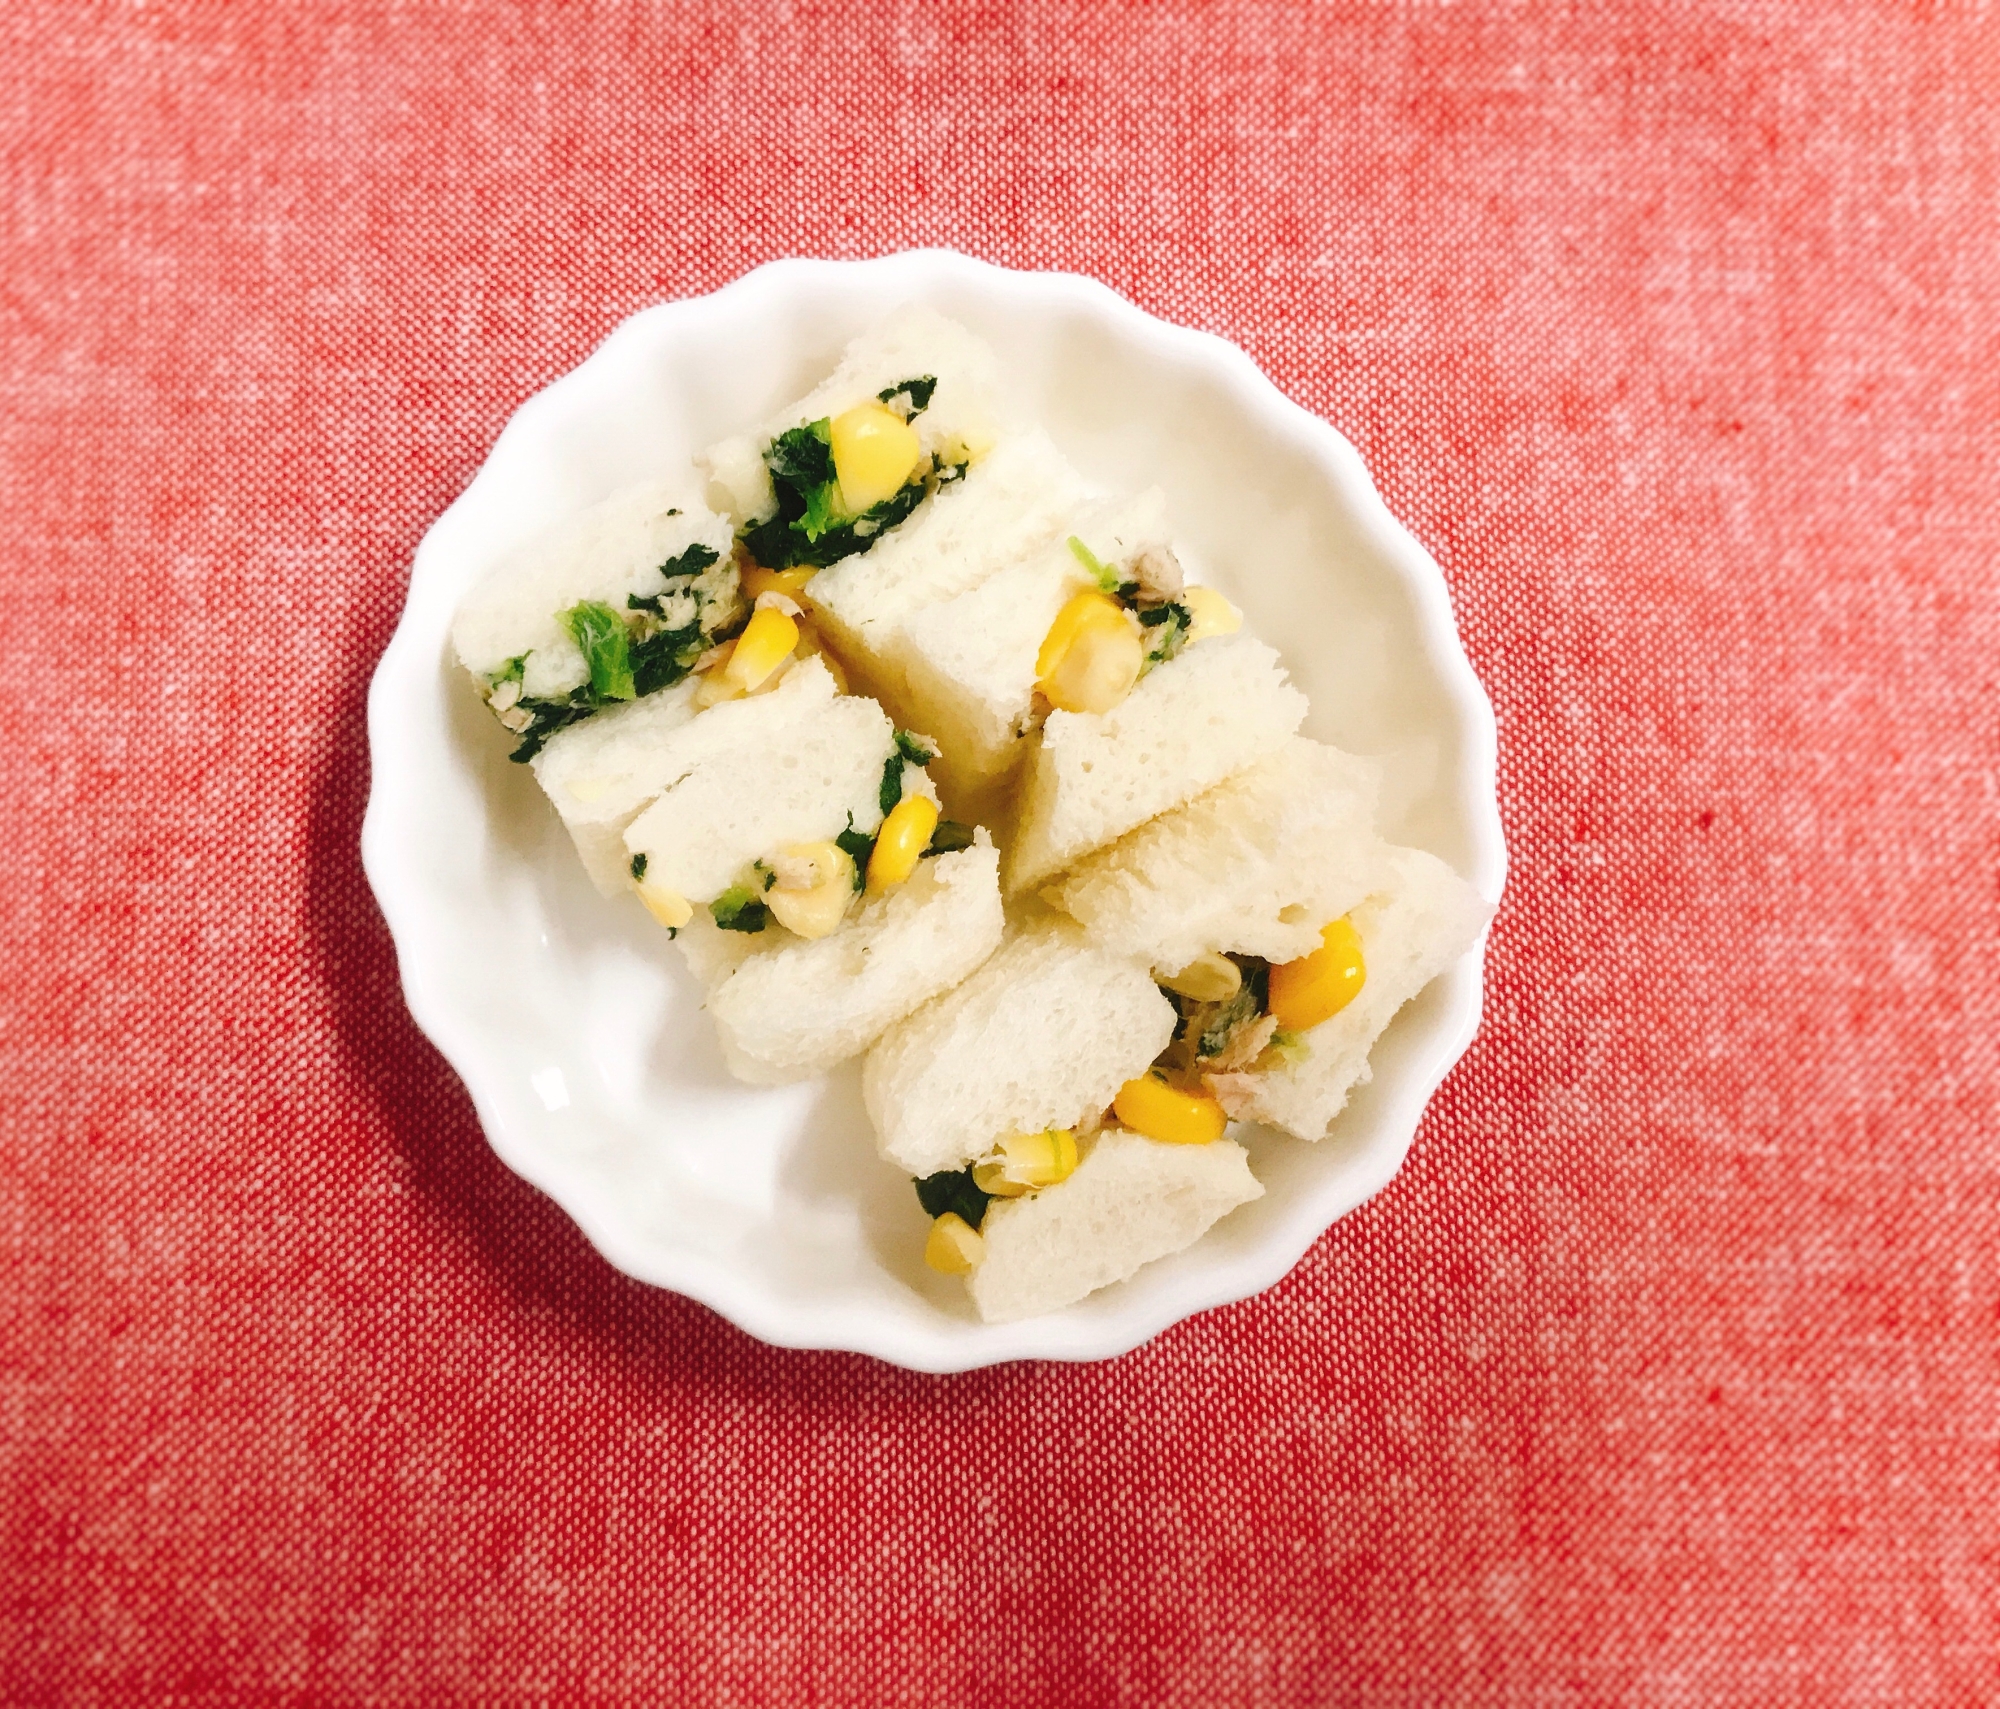 【離乳食完了期】小松菜とツナマヨコーンサンドイッチ